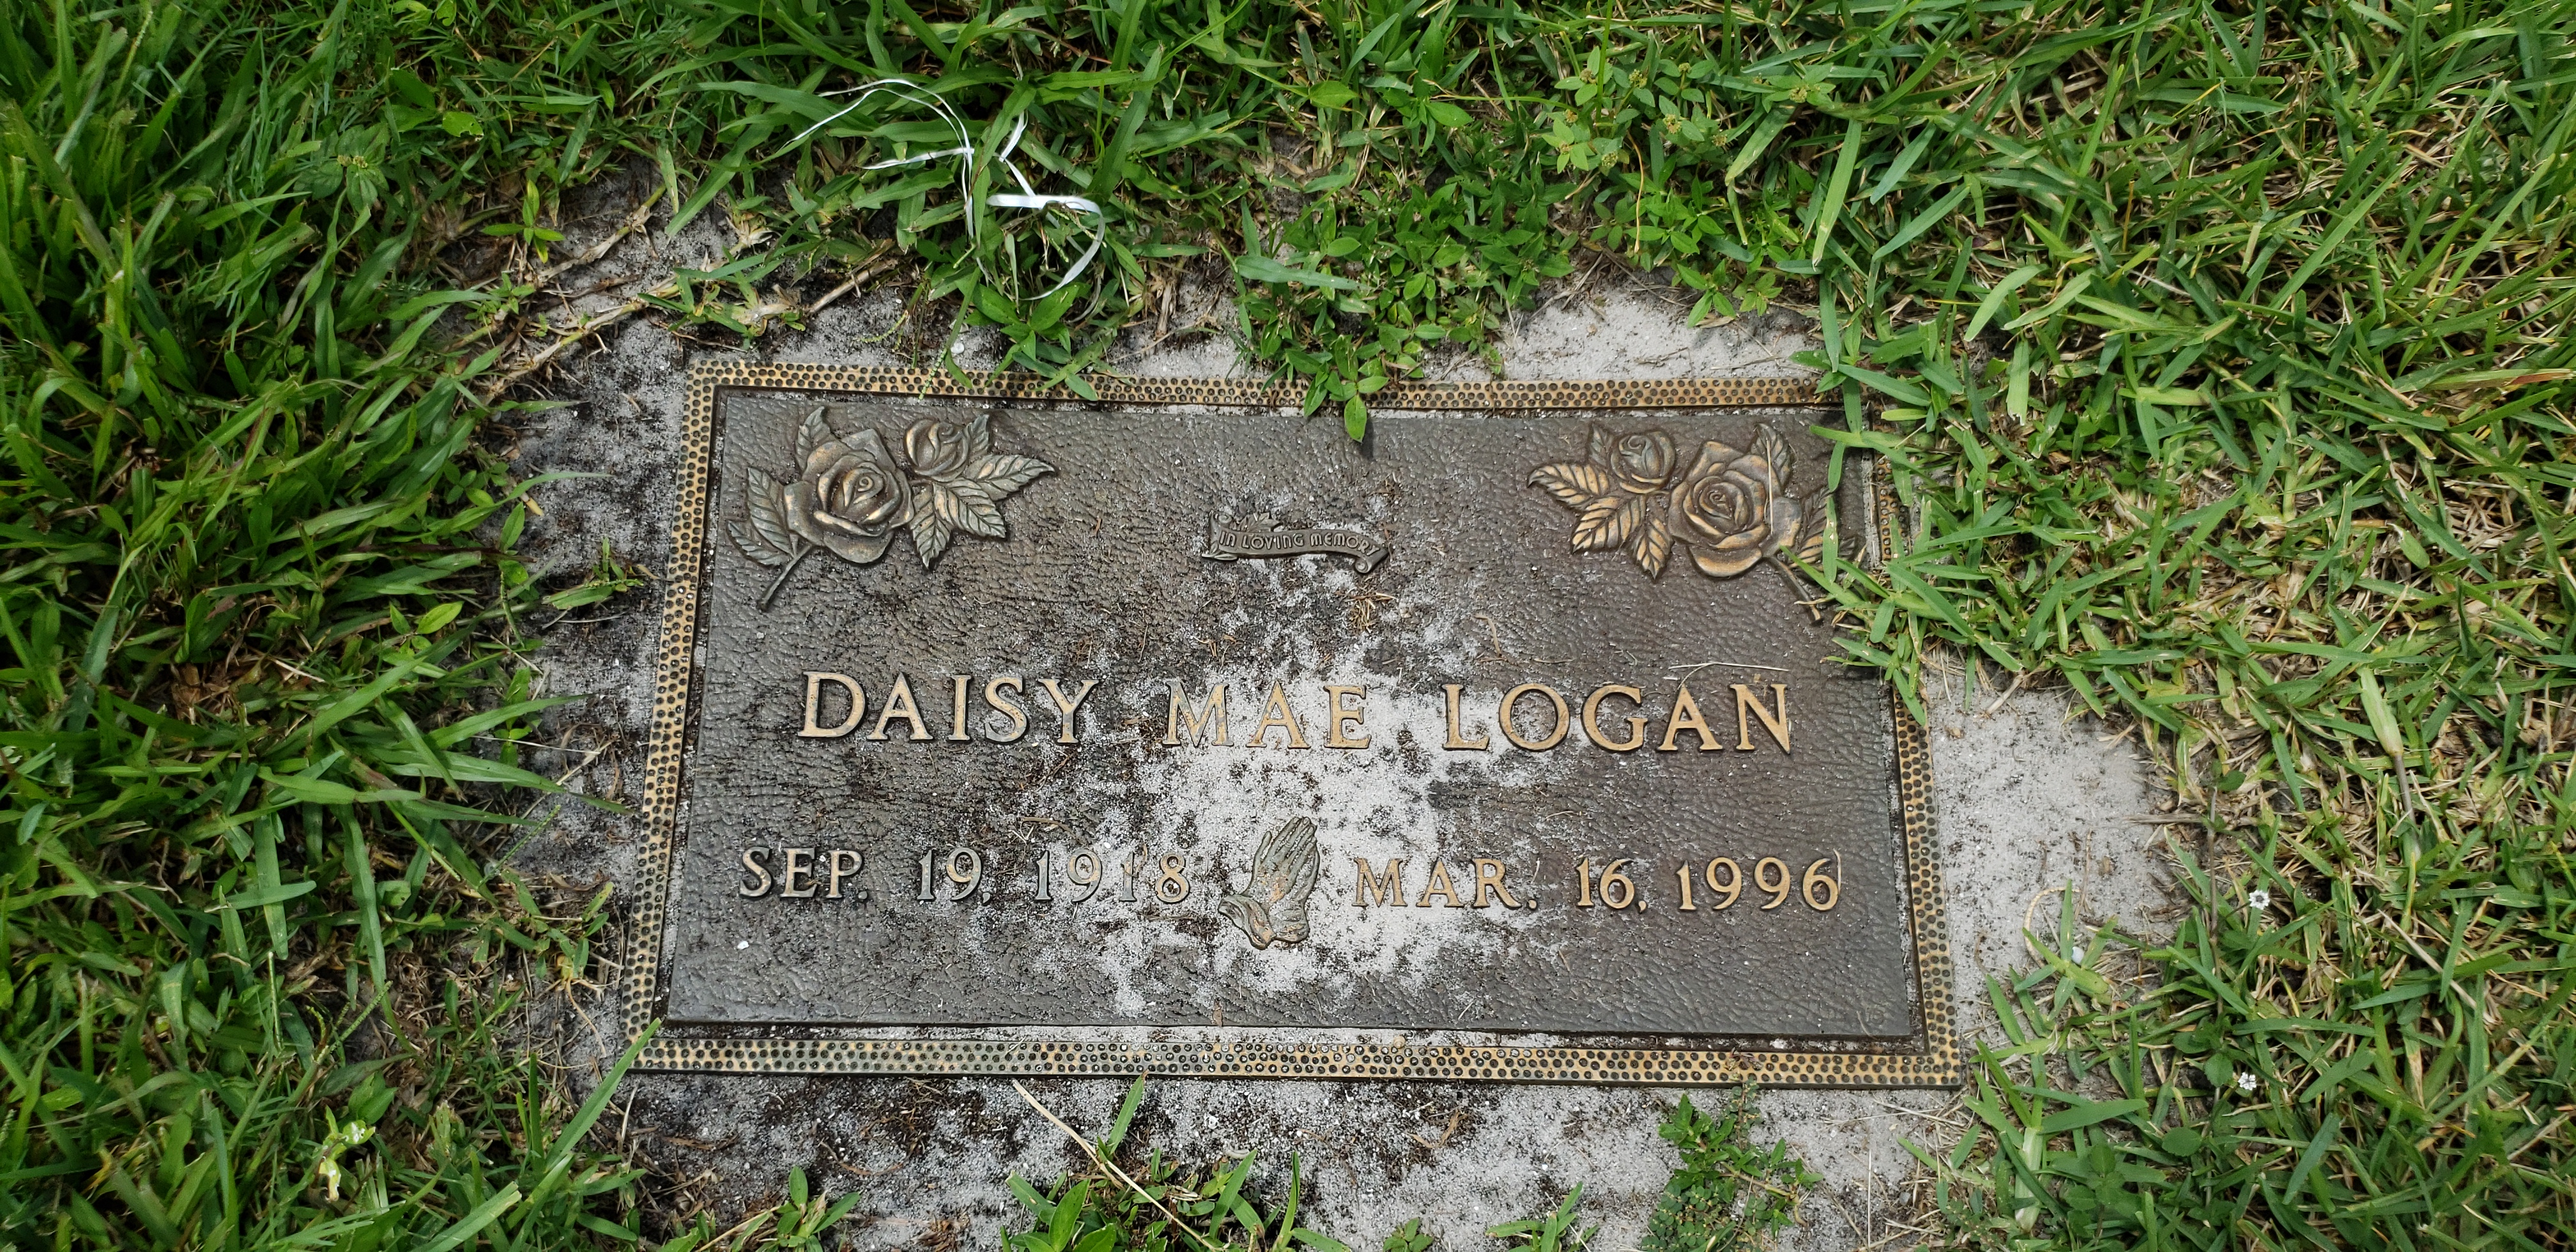 Daisy Mae Logan